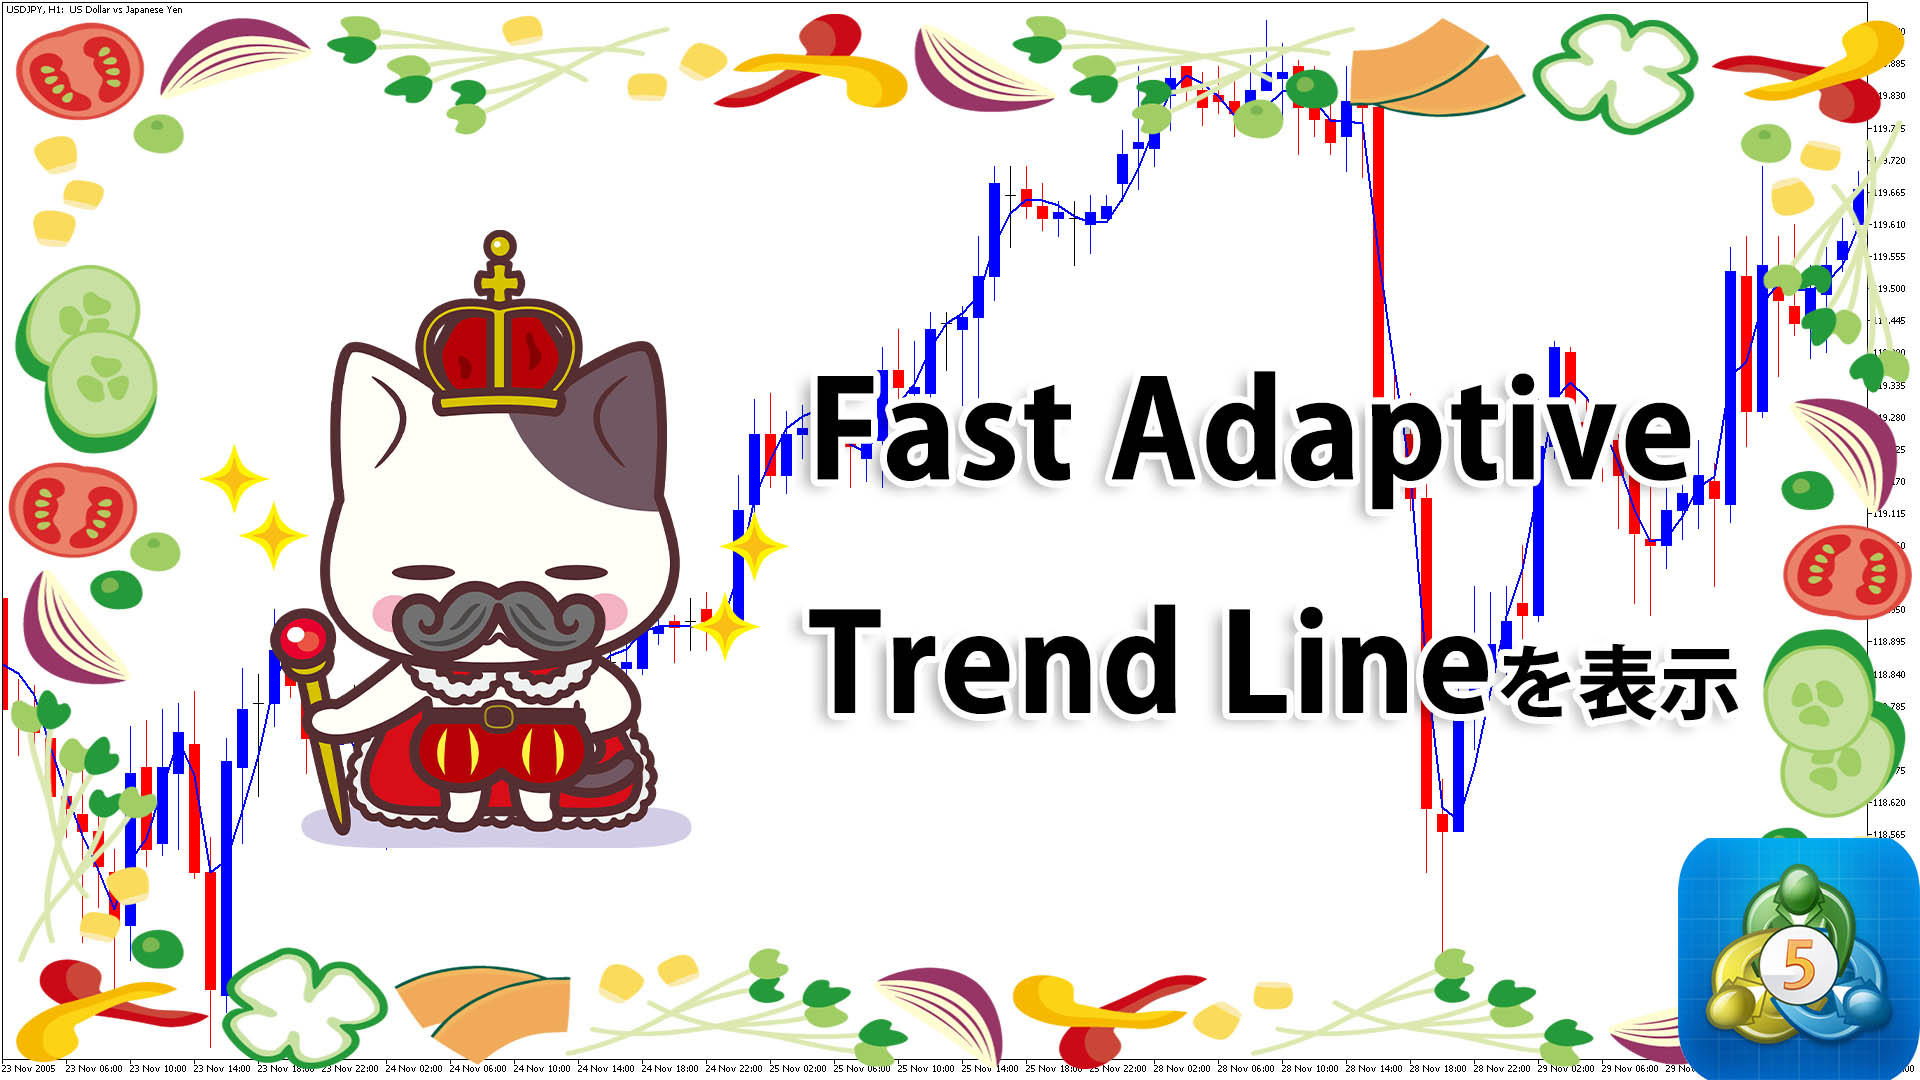 移動平均線のようなラインFast Adaptive Trend Lineを表示するMT5インジケーター「fatl」